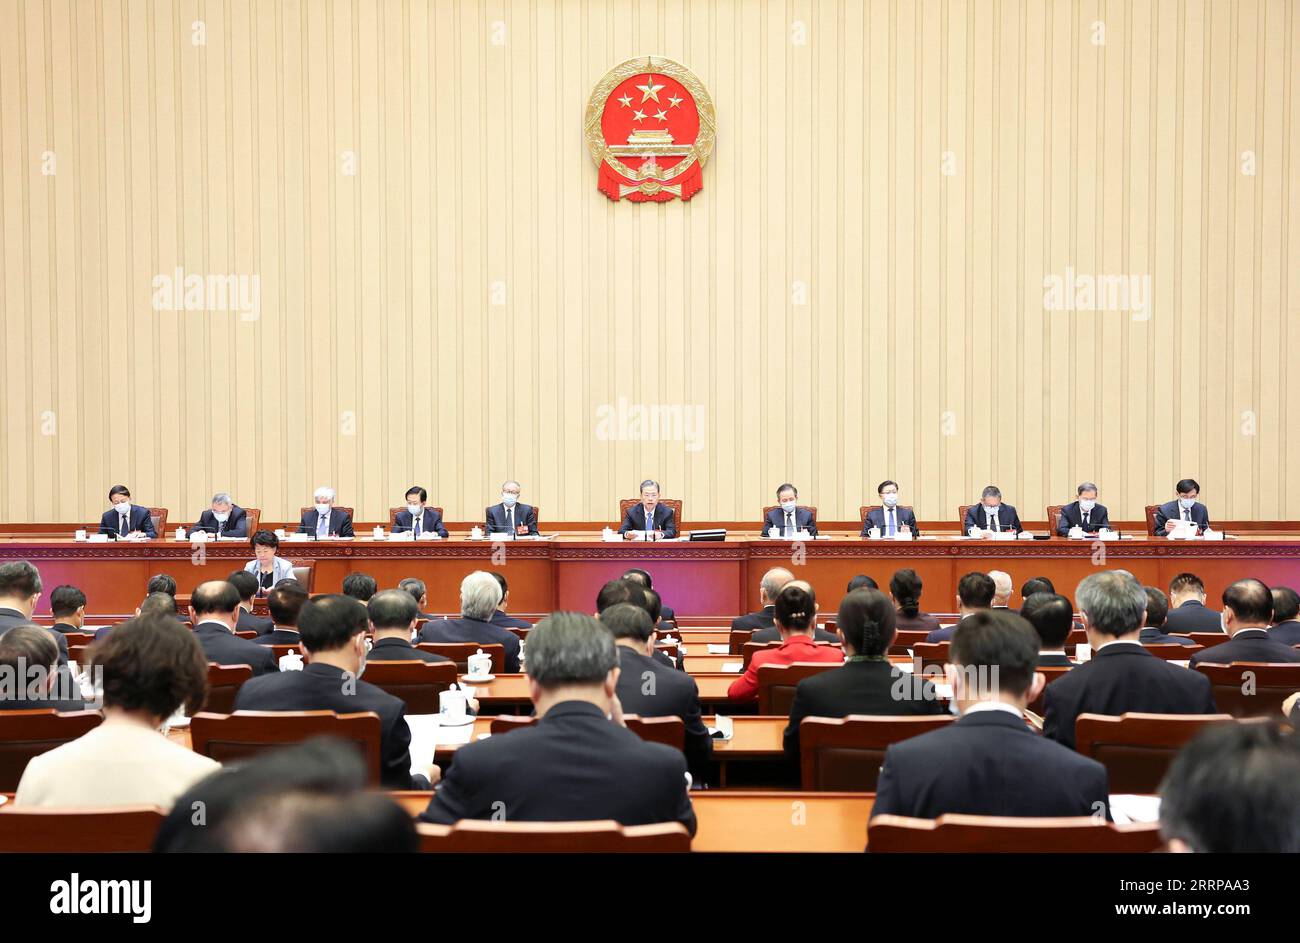 230308 -- PEKING, 8. März 2023 -- Zhao Leji, Vorsitzender des Präsidiums der ersten Sitzung des 14. Nationalen Volkskongresses NPC, leitet die zweite Sitzung des Präsidiums in der Großen Halle des Volkes in Peking, Hauptstadt Chinas, am 8. März 2023. ZWEI SESSIONSCHINA-BEIJING-NPC-PRESIDIUM-MEETING CN PANGXXINGLEI PUBLICATIONXNOTXINXCHN Stockfoto